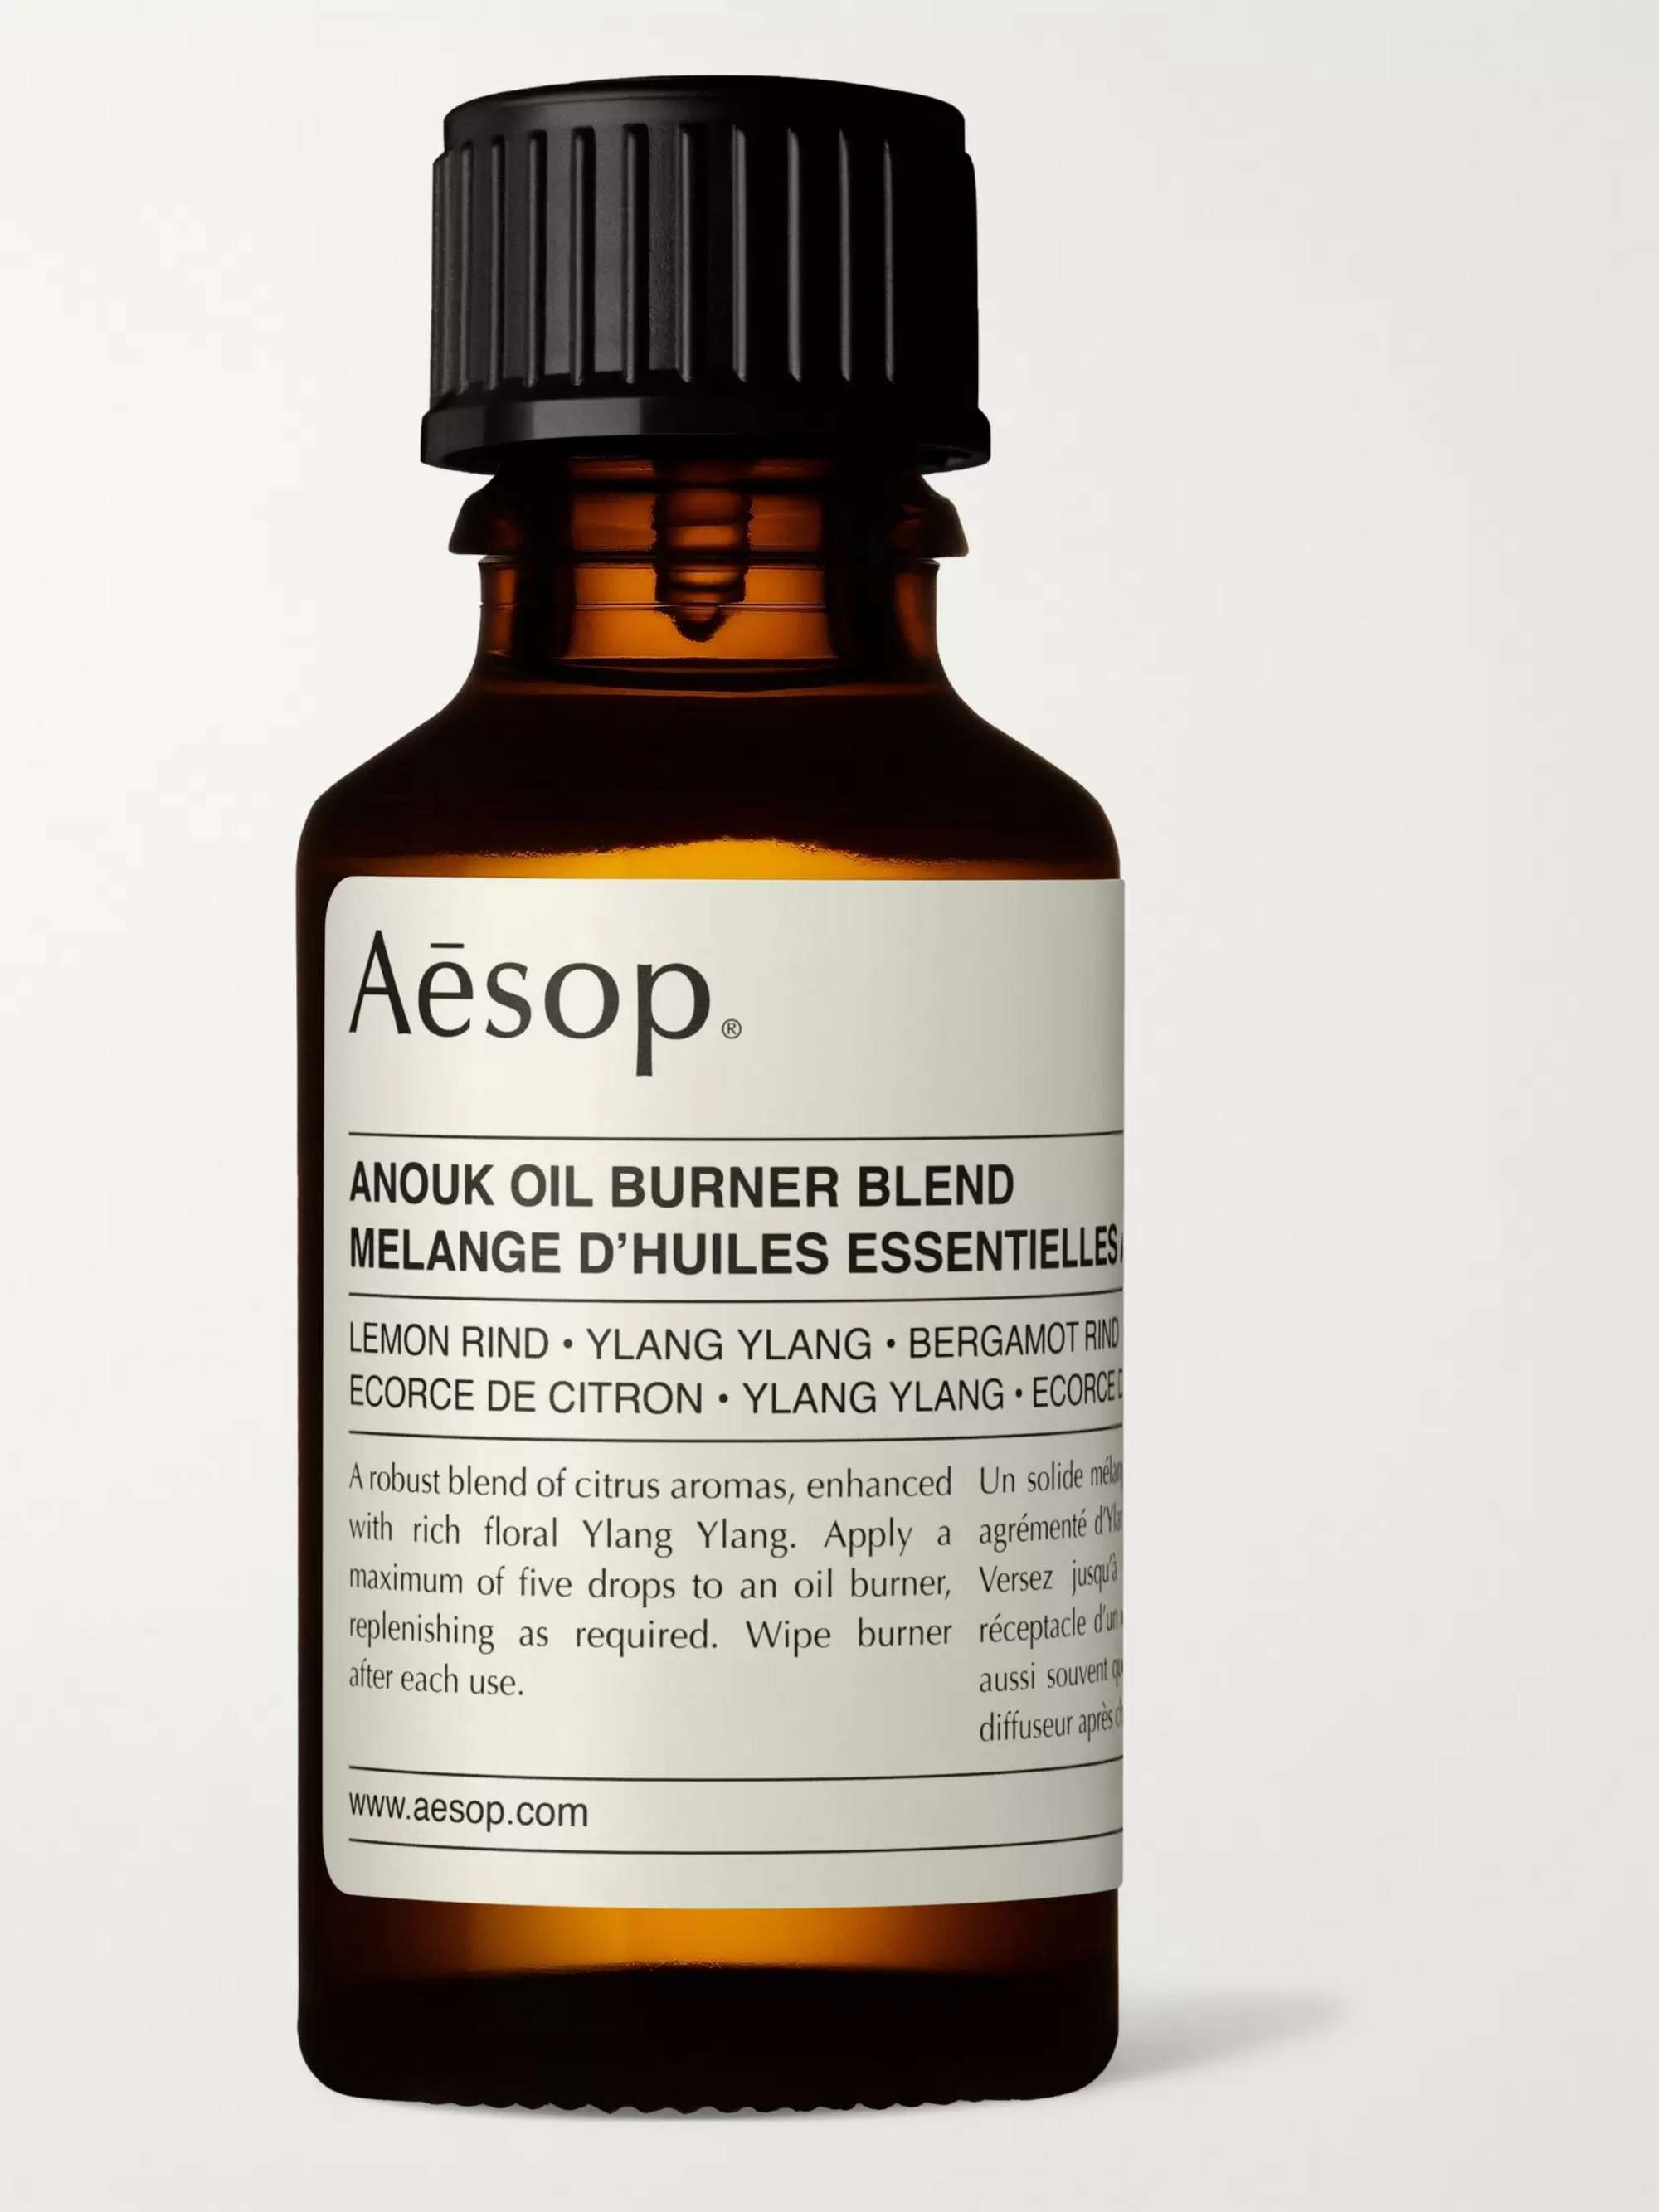 AESOP Oil Burner Blend - Anouk, 25ml